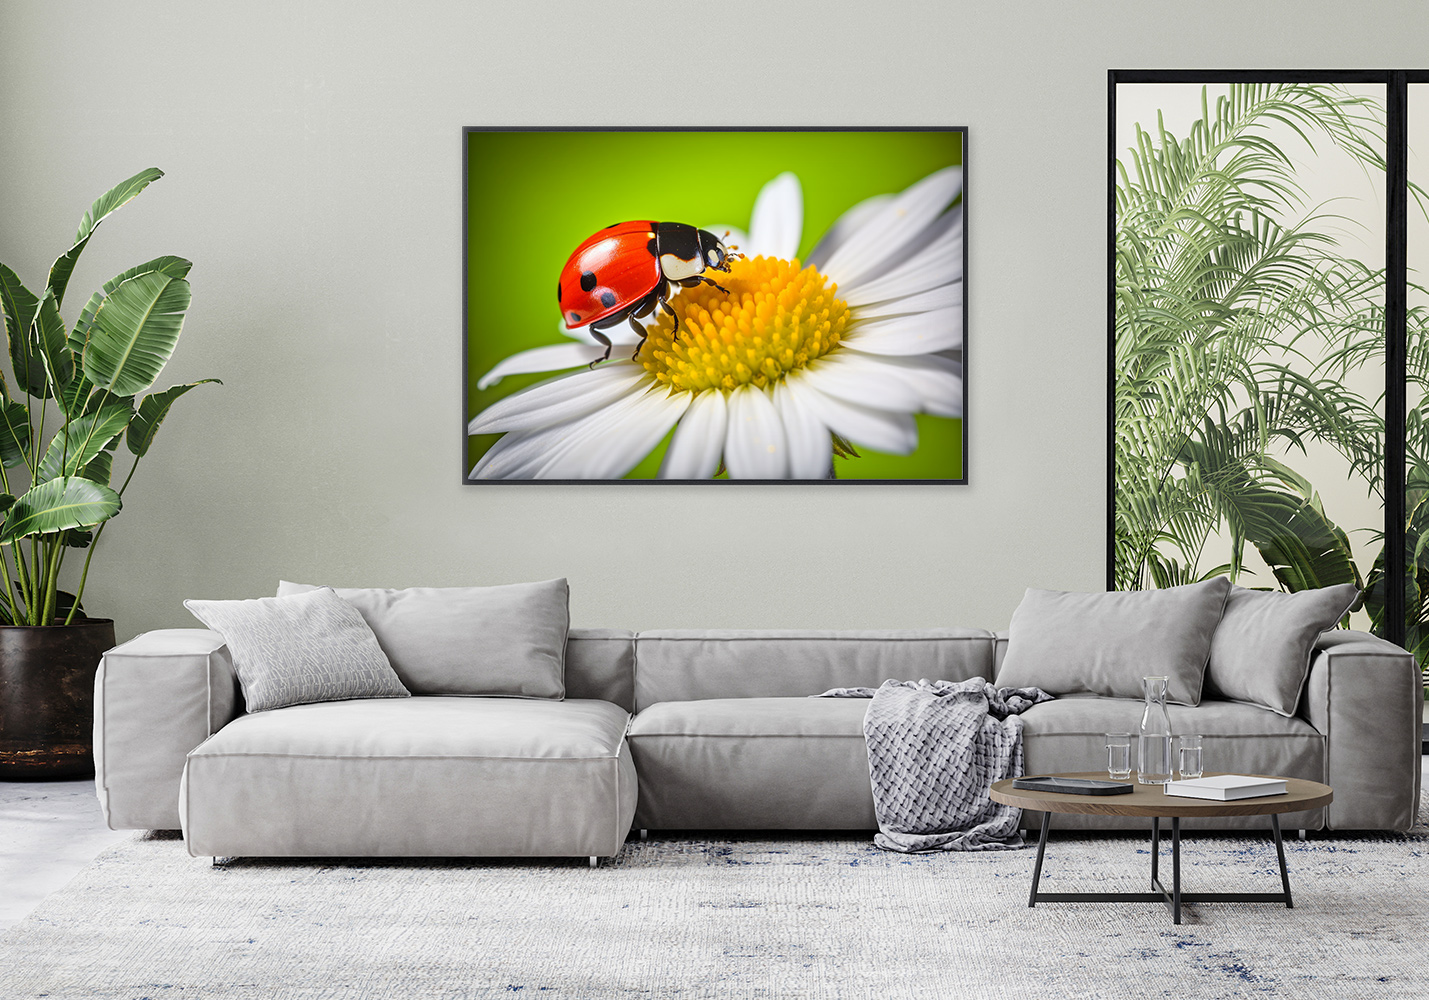 Ladybug on a daisy flower